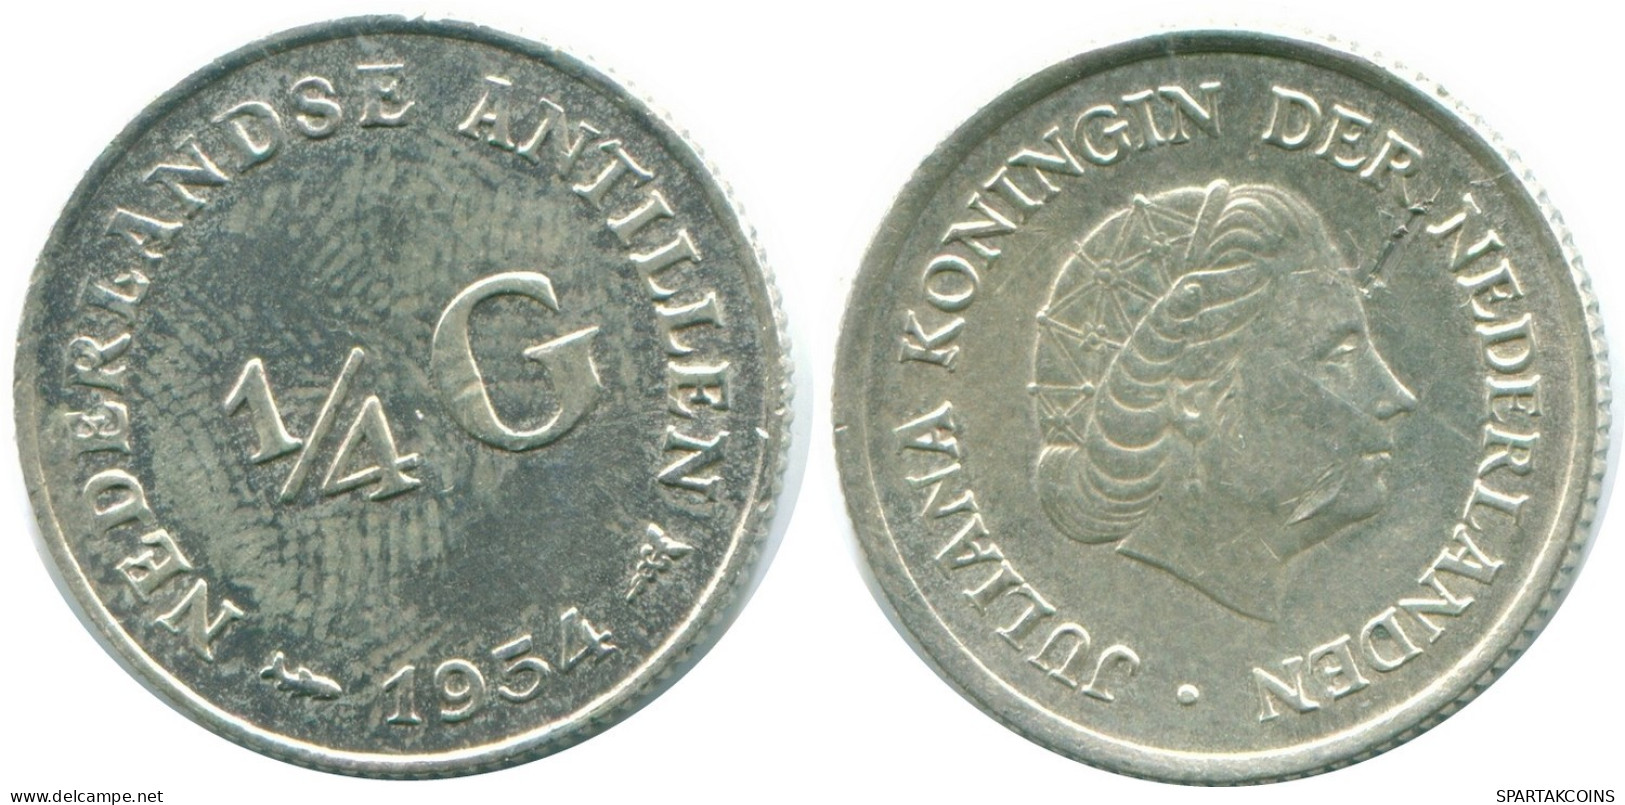 1/4 GULDEN 1954 NIEDERLÄNDISCHE ANTILLEN SILBER Koloniale Münze #NL10848.4.D.A - Nederlandse Antillen